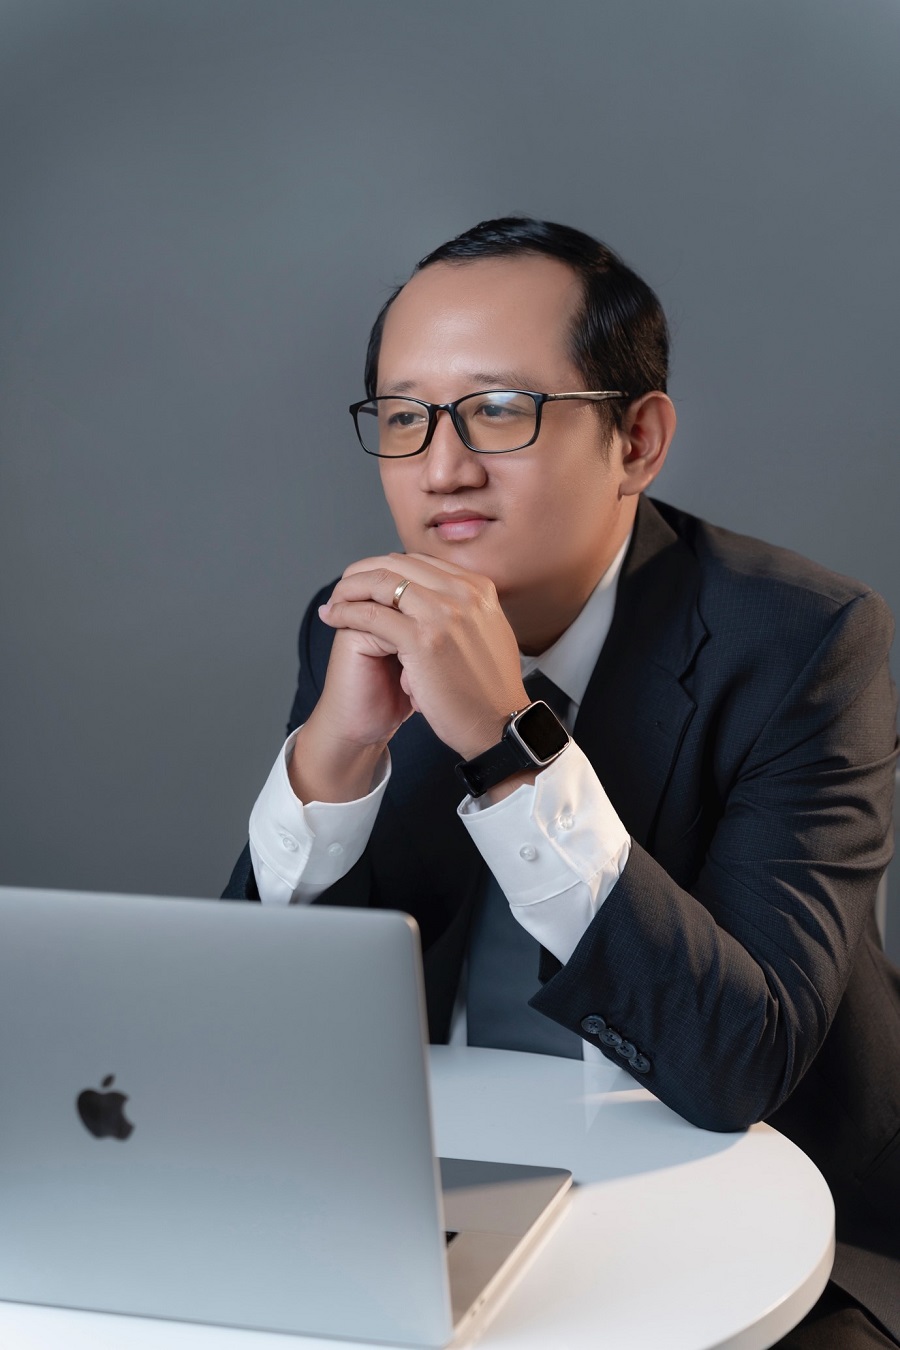 Cần biết - Luật sư Nguyễn Văn Toàn: Tự hào với sứ mệnh góp phần bảo vệ công lý và quyền con người